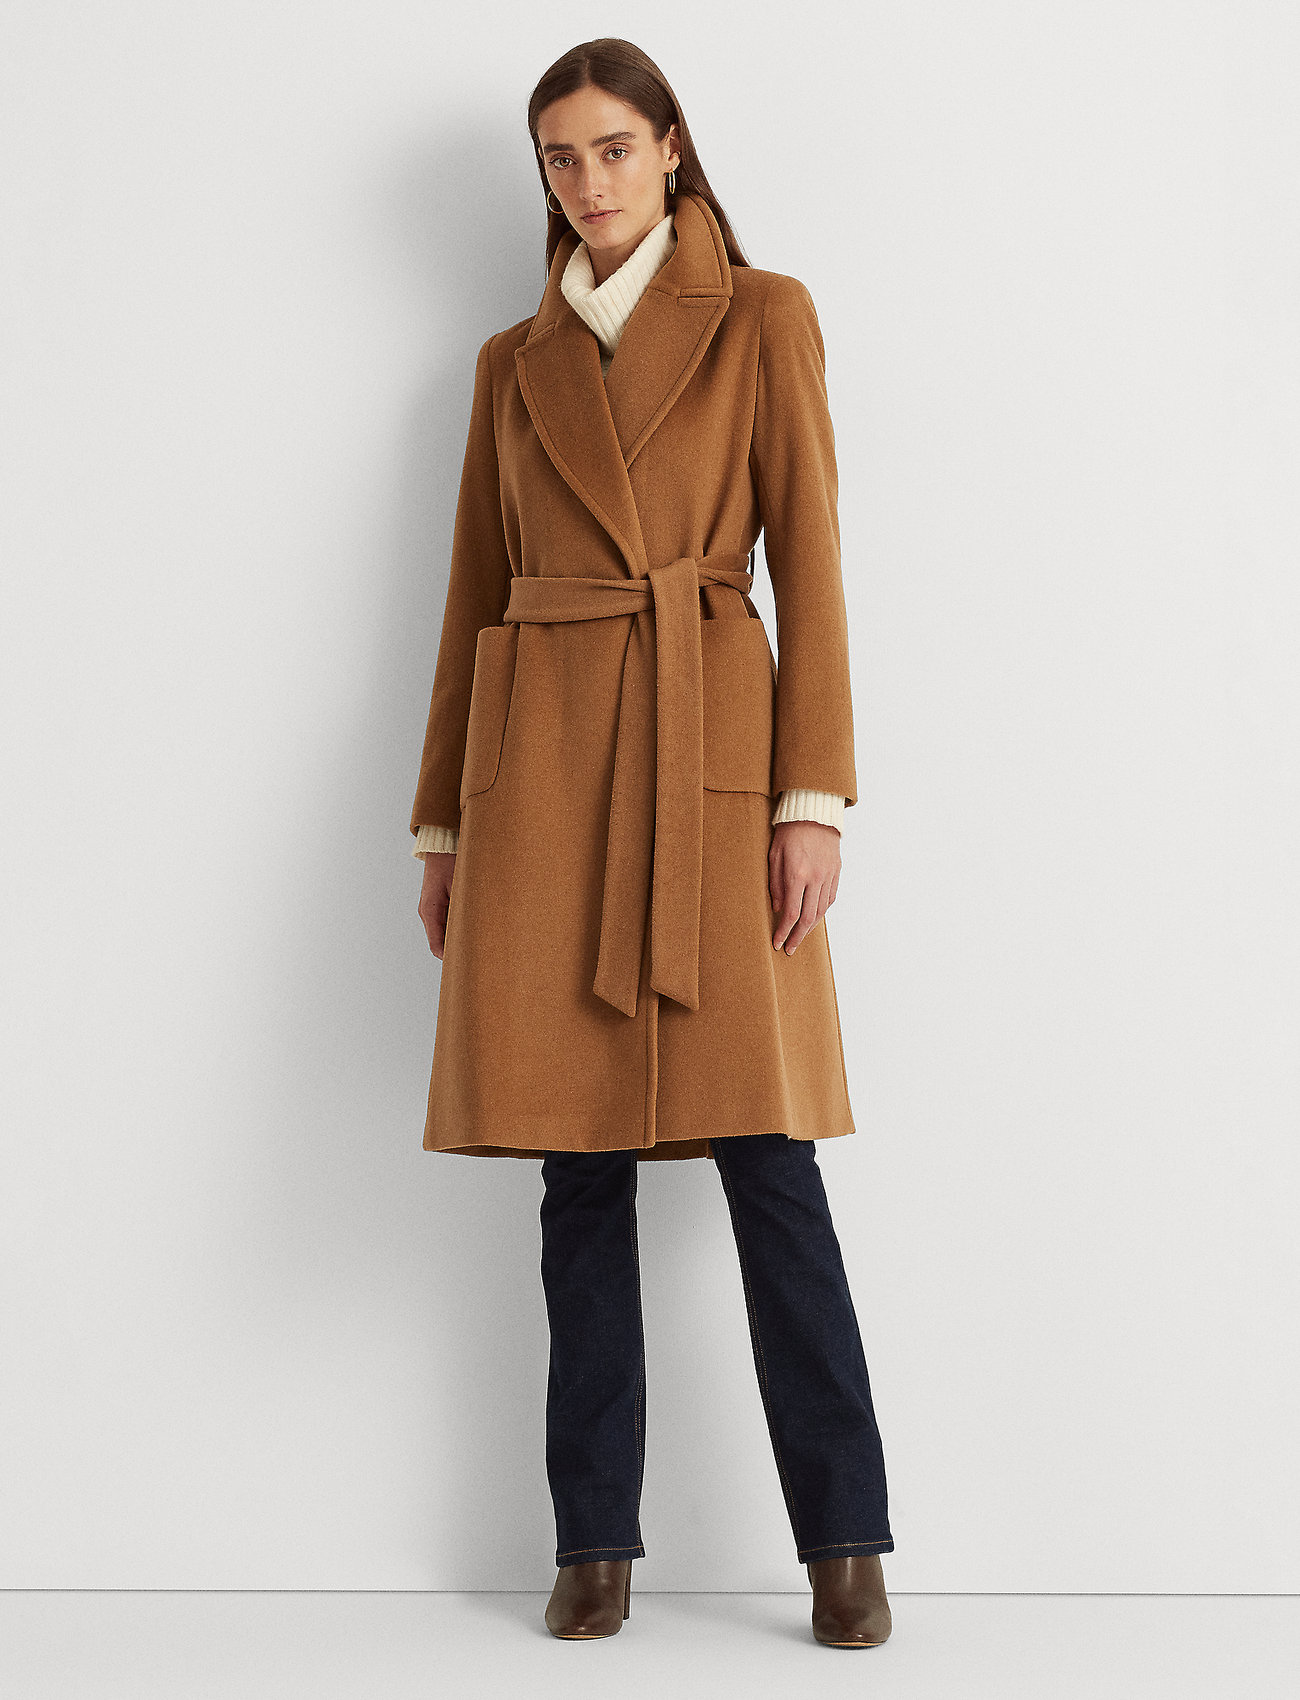 Lauren Ralph Lauren Wool-blend Wrap Coat - 429 €. Buy Winter Coats from Lauren  Ralph Lauren online at . Fast delivery and easy returns